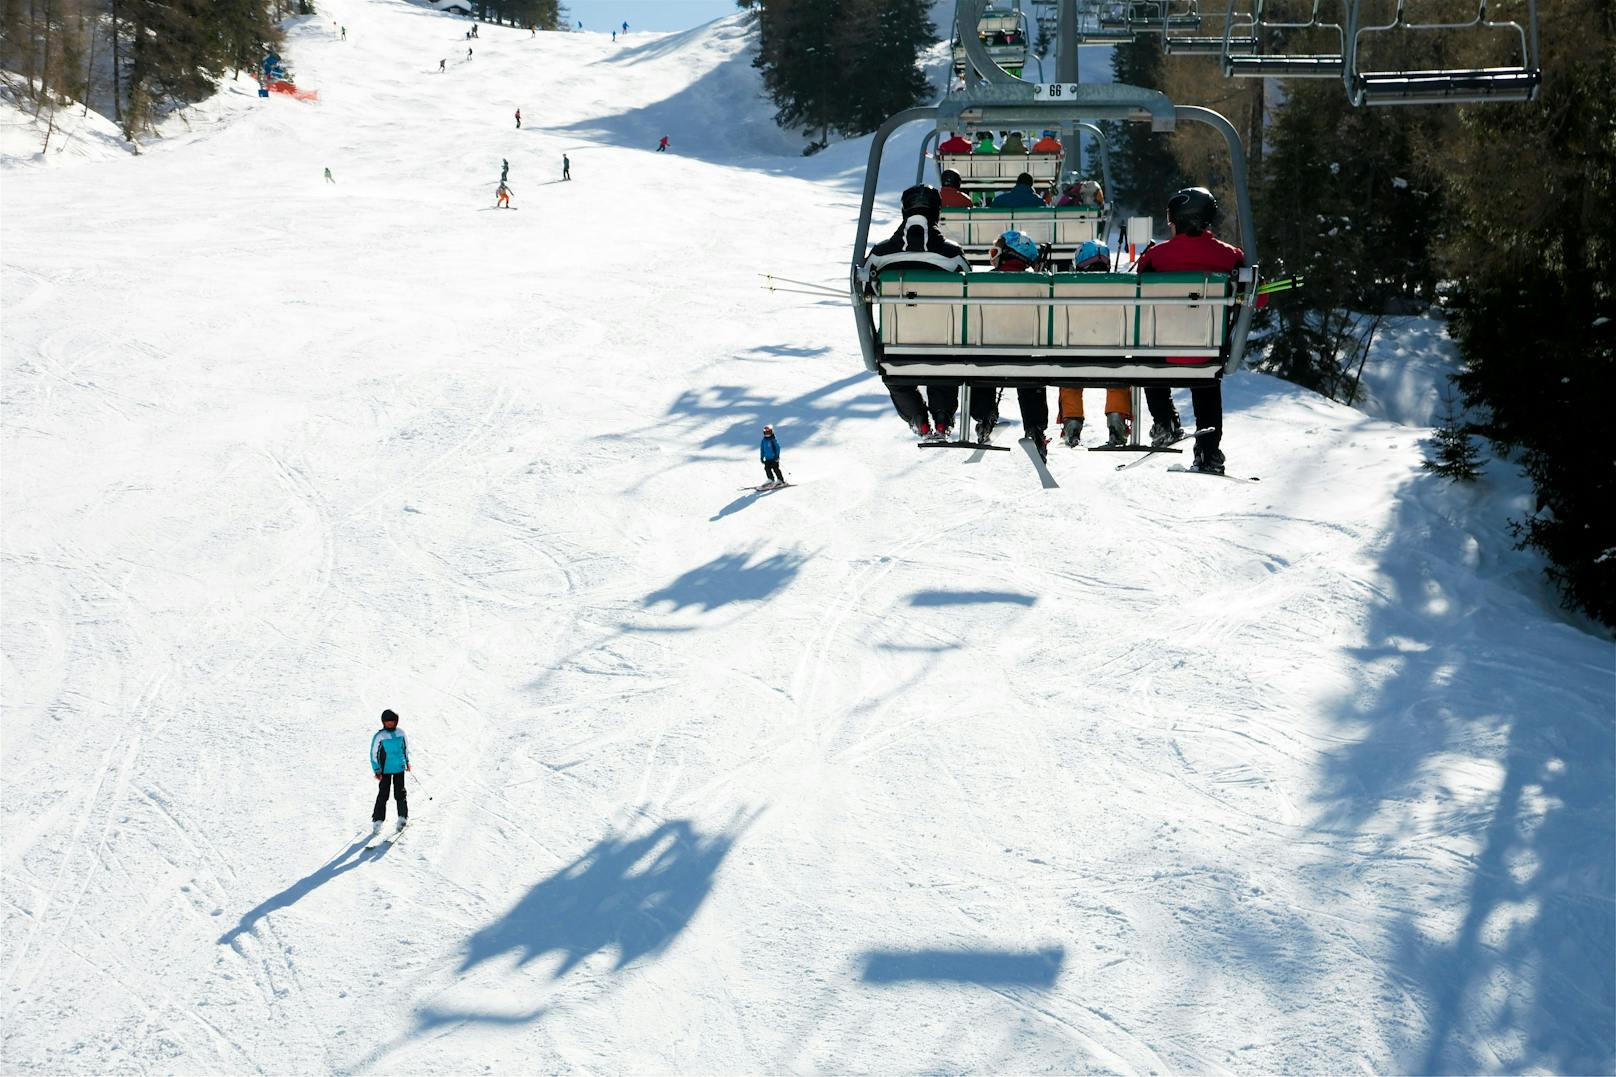 Ein berühmtes Skigebiet muss seine hohen Kosten an die Inflation anpassen. (Symbolbild)